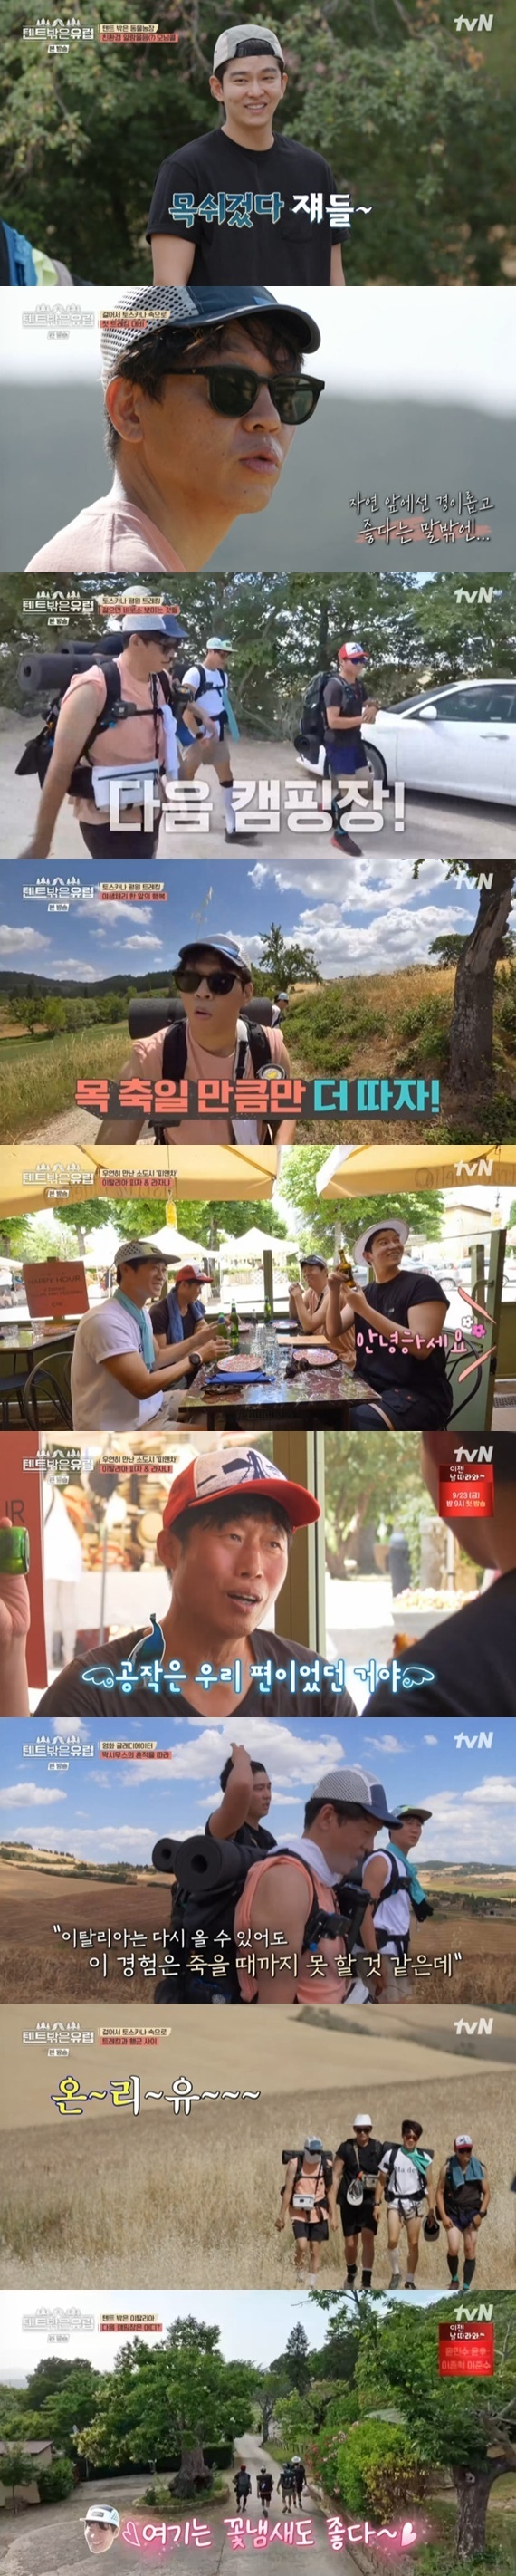 tvN '텐트 밖은 유럽' 캡처